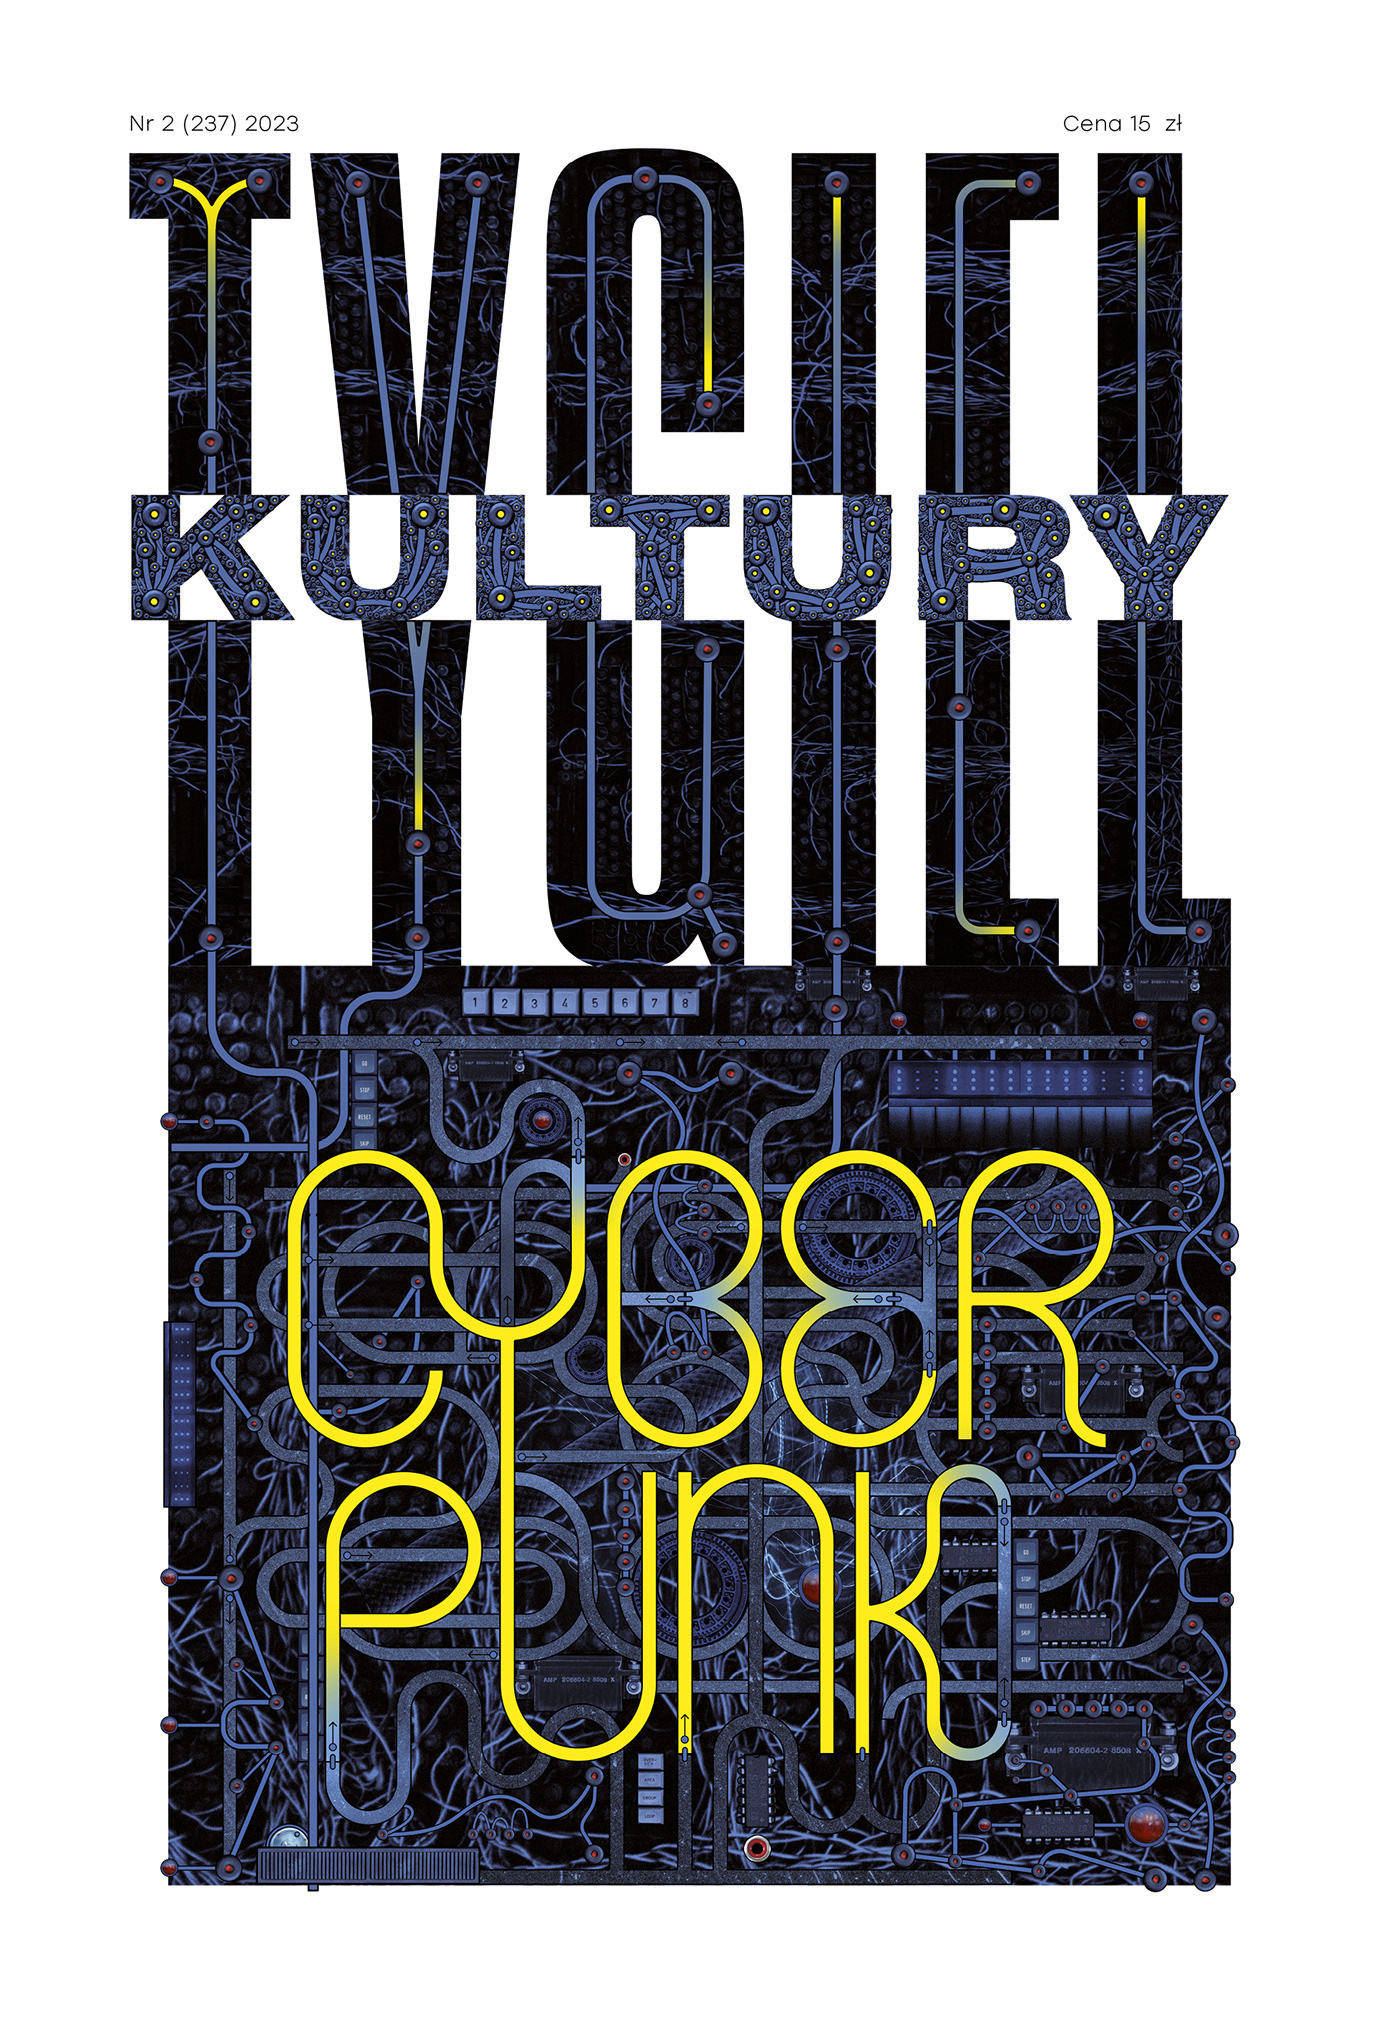 Cyberpunk magazine editorialdesign culture hightech collage literature SF